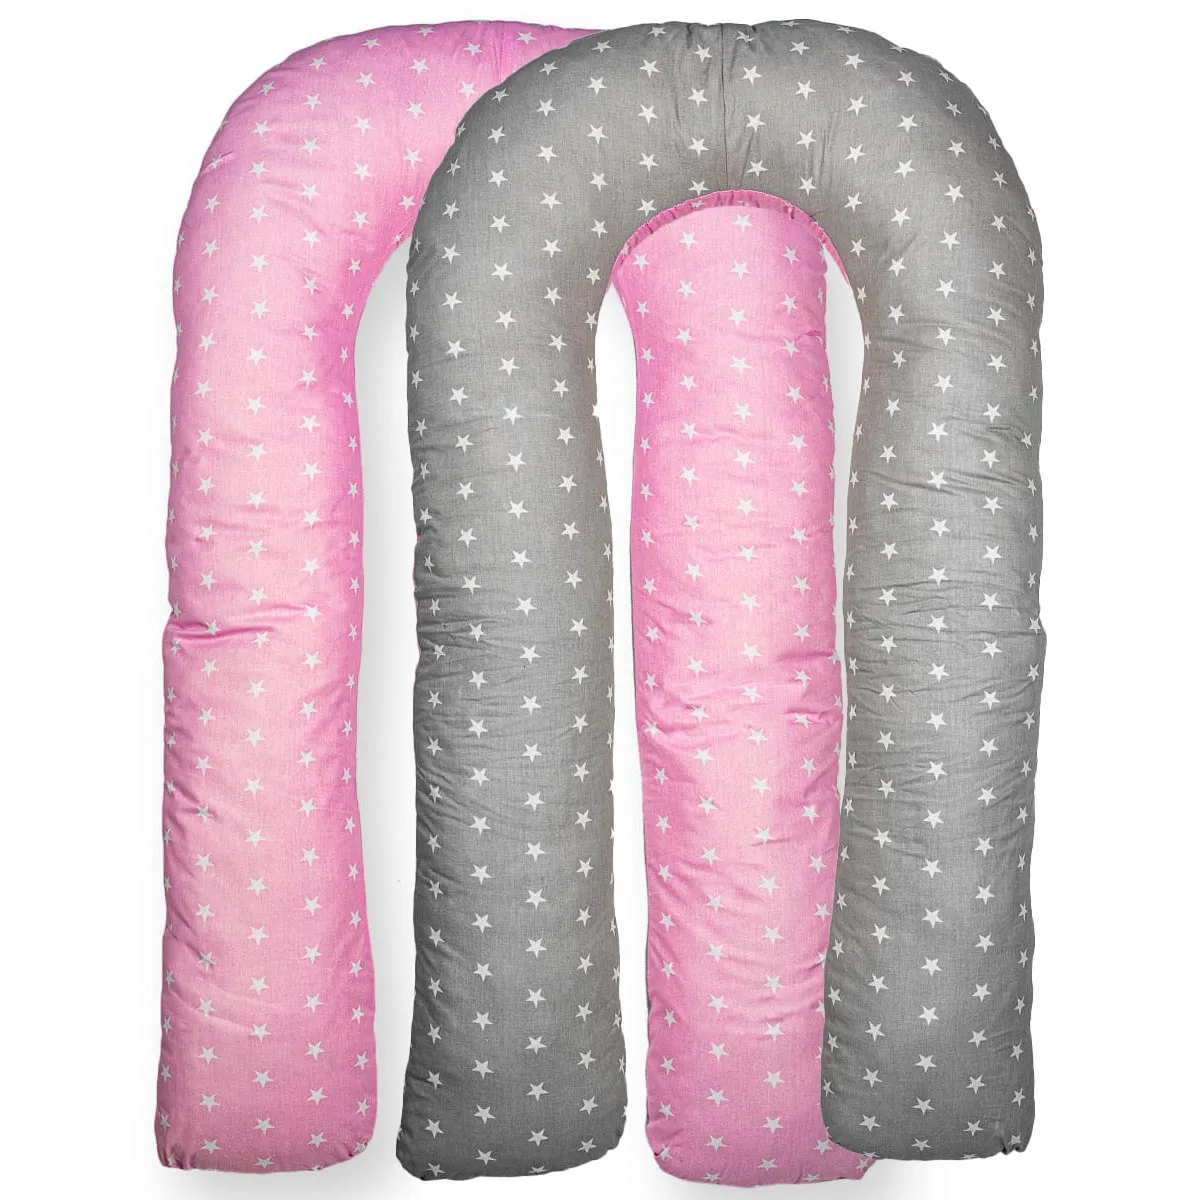 Чехол формы U на подушку для беременных и кормящих "Звезды" розовый с серым